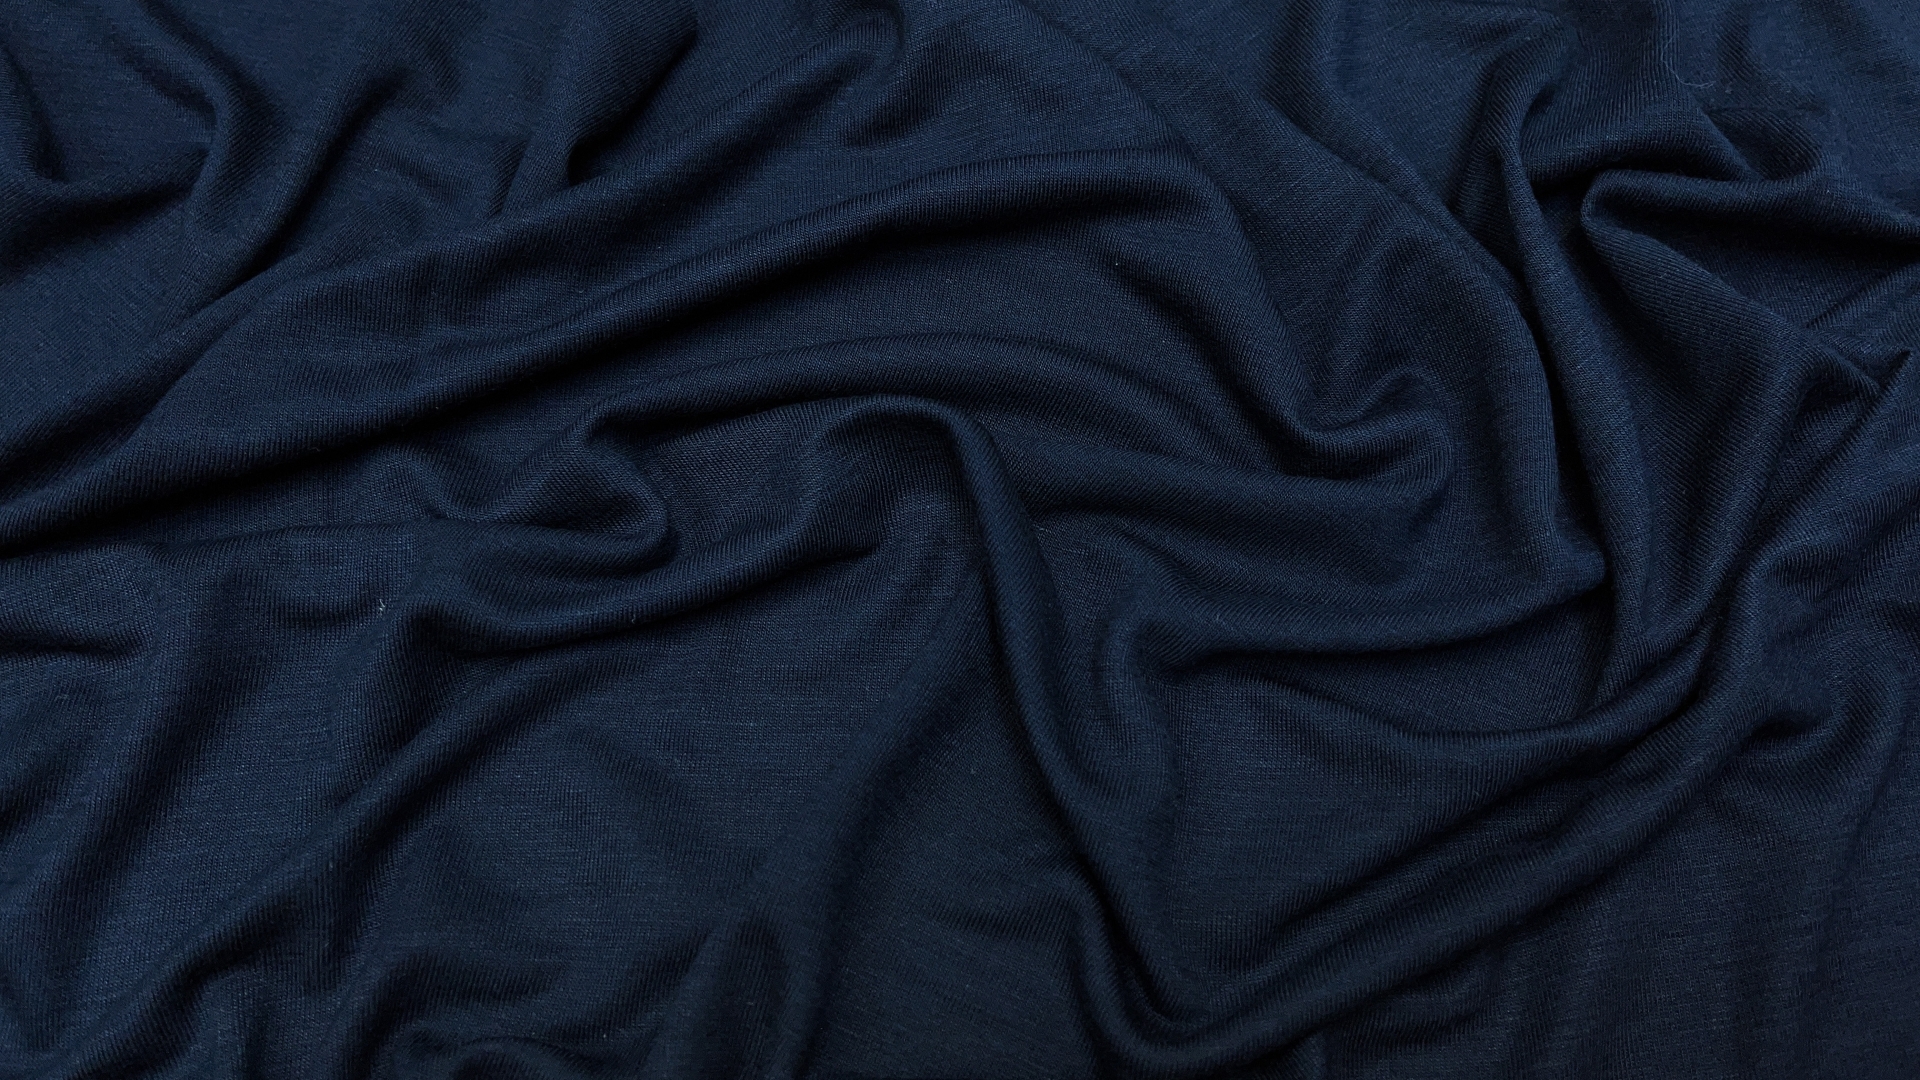 Предзаказ! Ожидаем на склад ориентировочно 23-24 мая. 
Трикотаж темно-синего цвета из итальянского фабричного стока. Довольно легкий, тоненький. Для футболок на лето идеально. Большая ширина, для футболки достаточно одной длины.